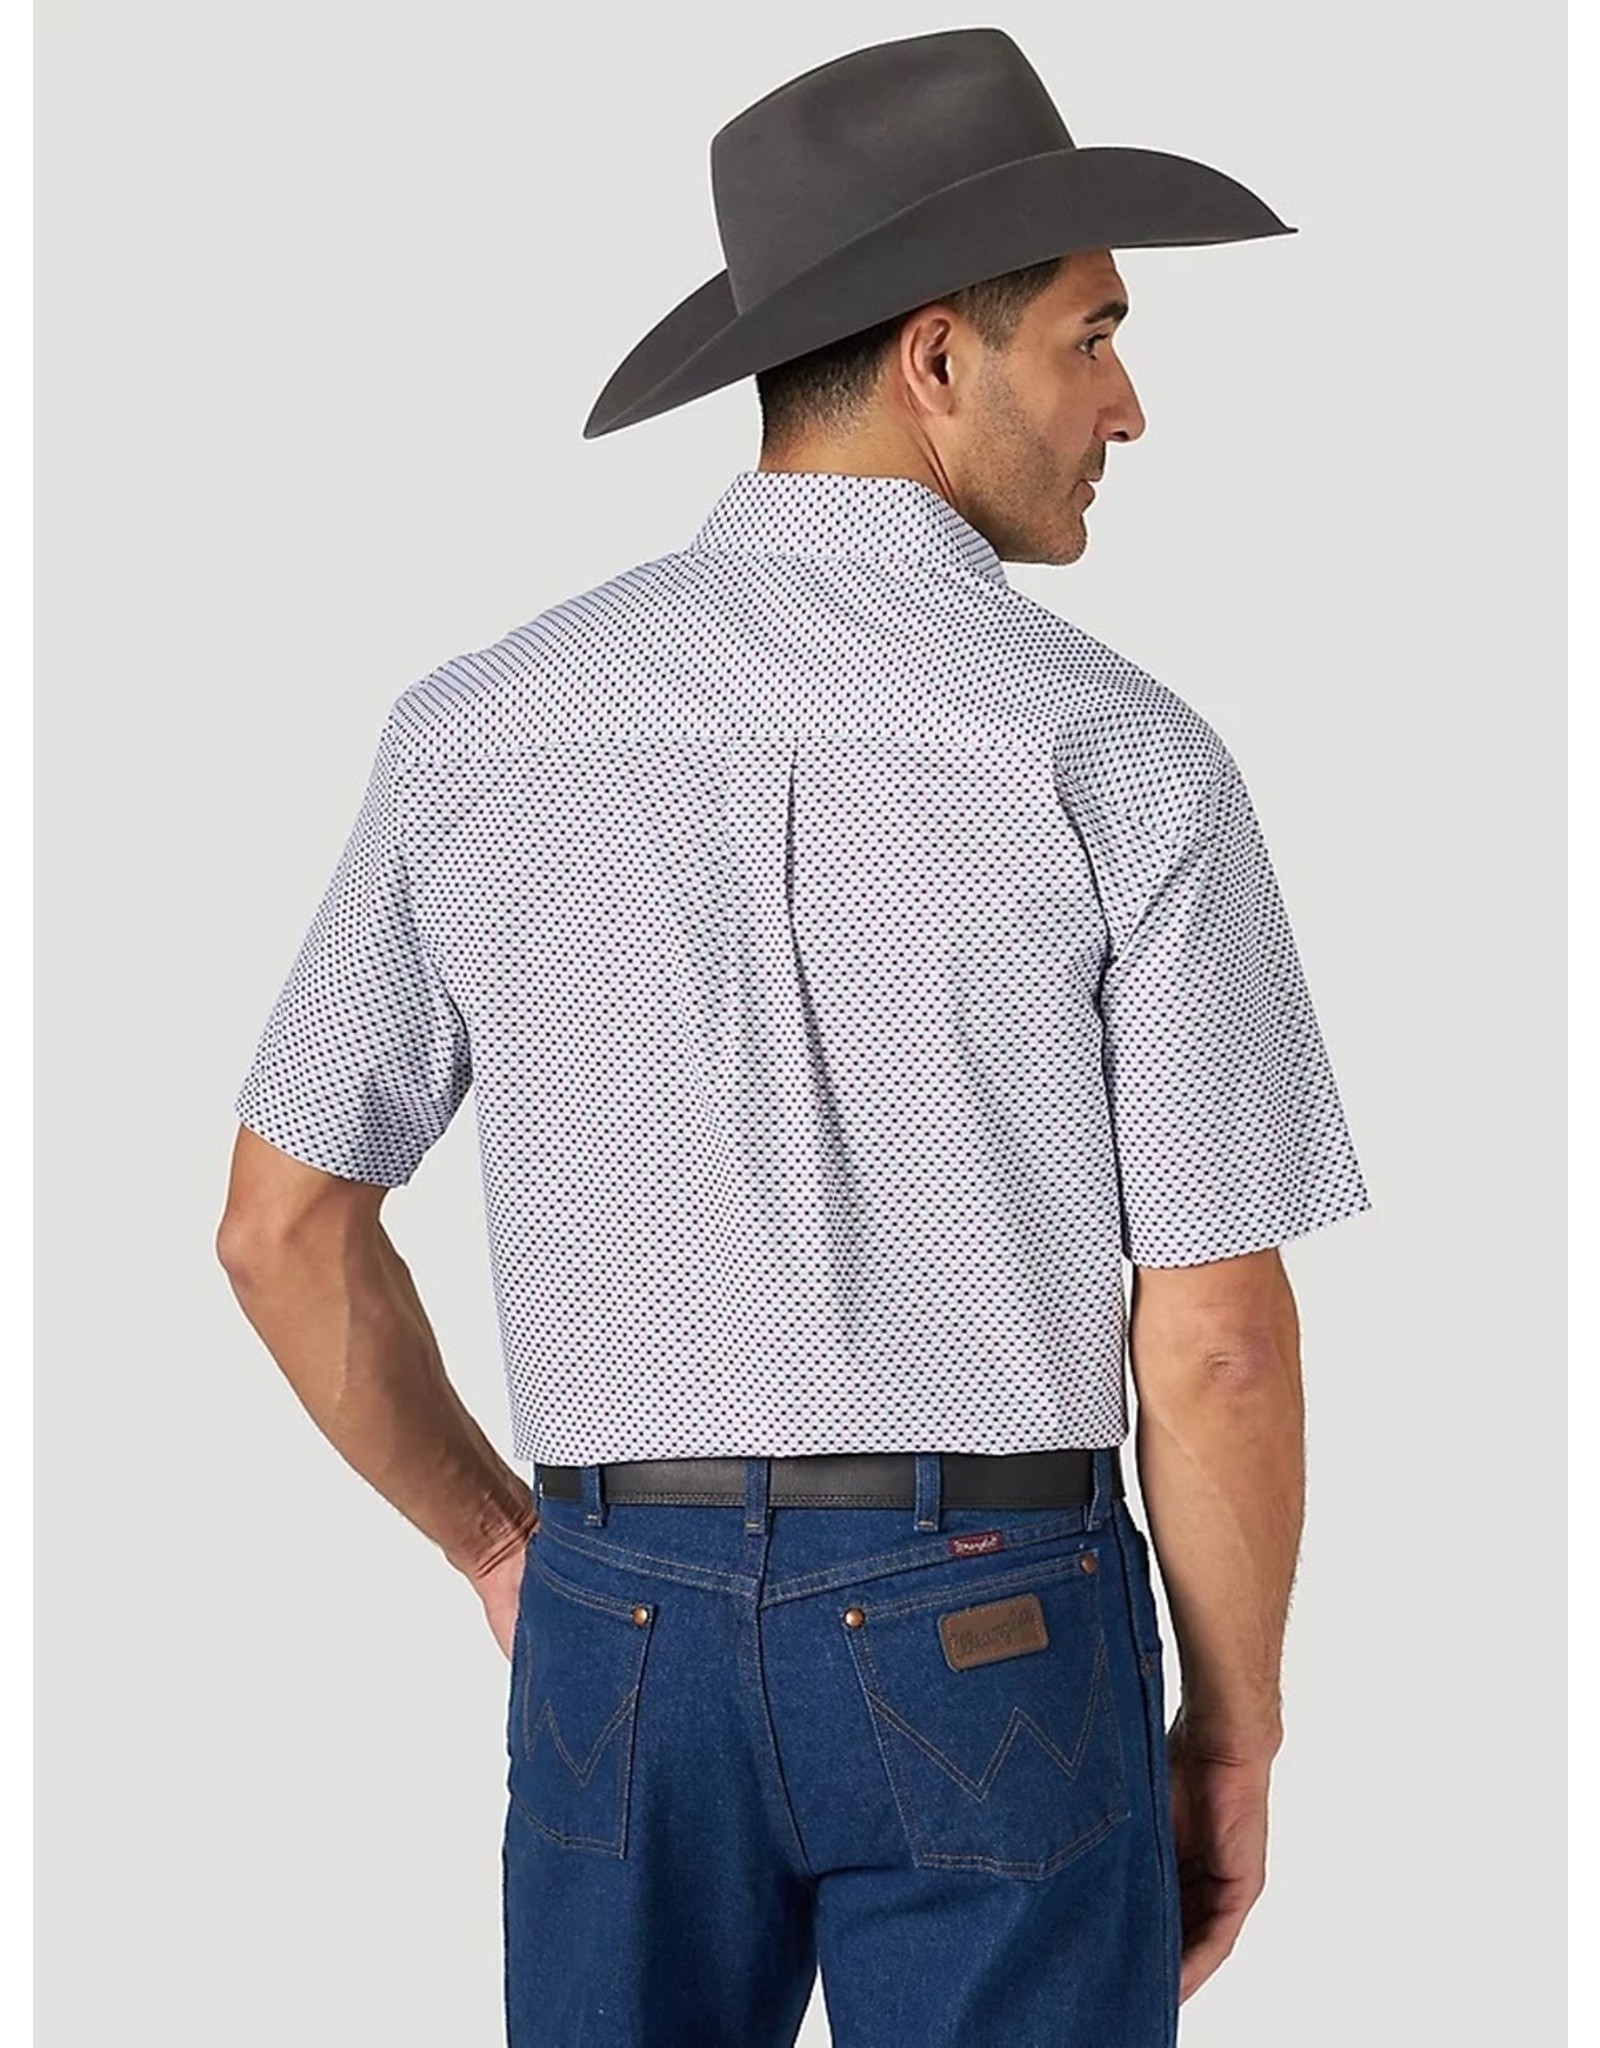 Wrangler - Men's George Strait Two Pocket Short Sleeve Shirt - 112314997